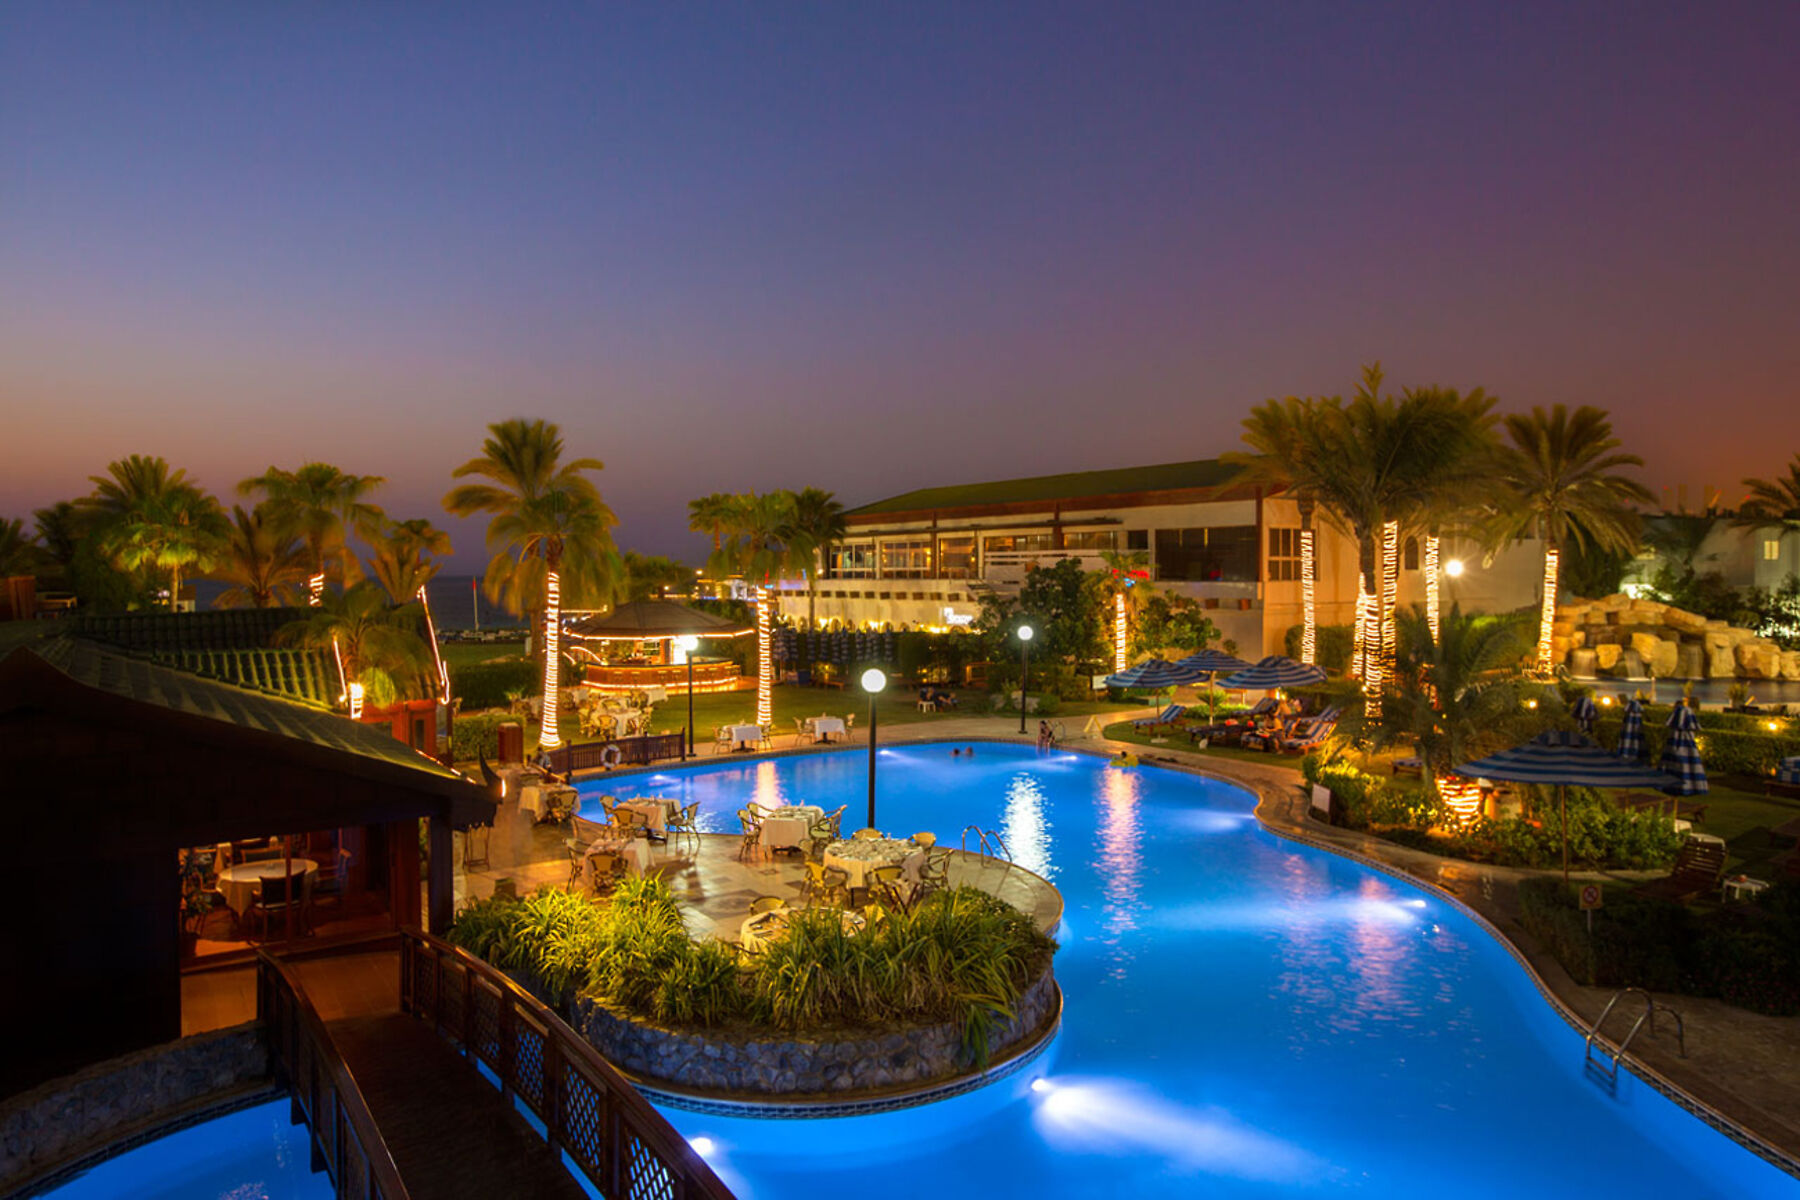 Dubai Marine Beach Resort and Spa